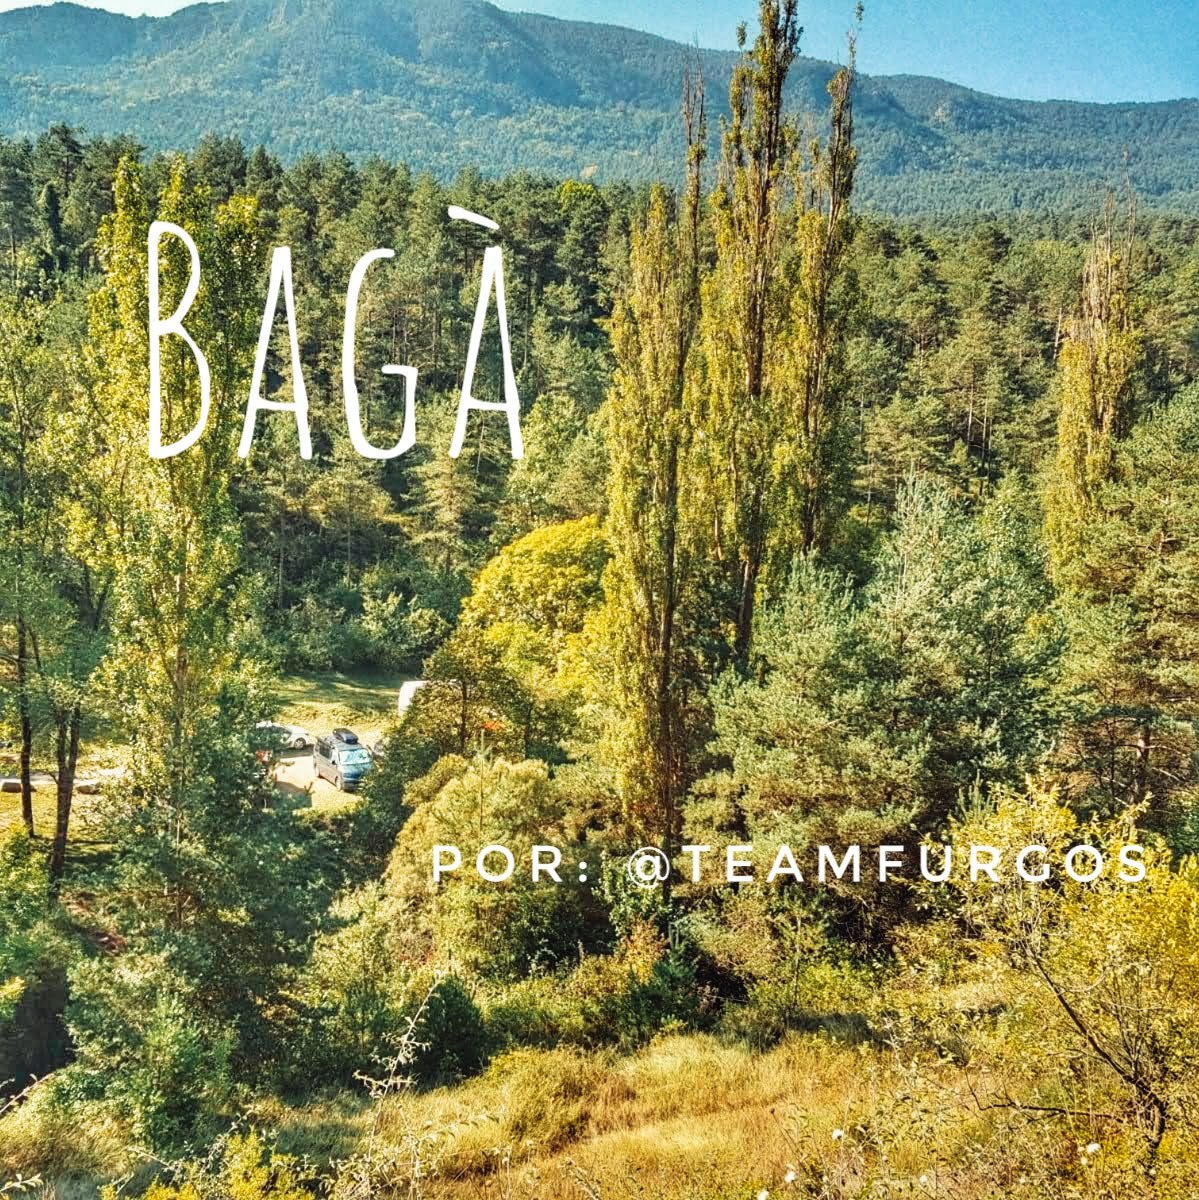 En este momento estás viendo Bagà en furgo por la ruta dels Empedrats por @teamfurgos